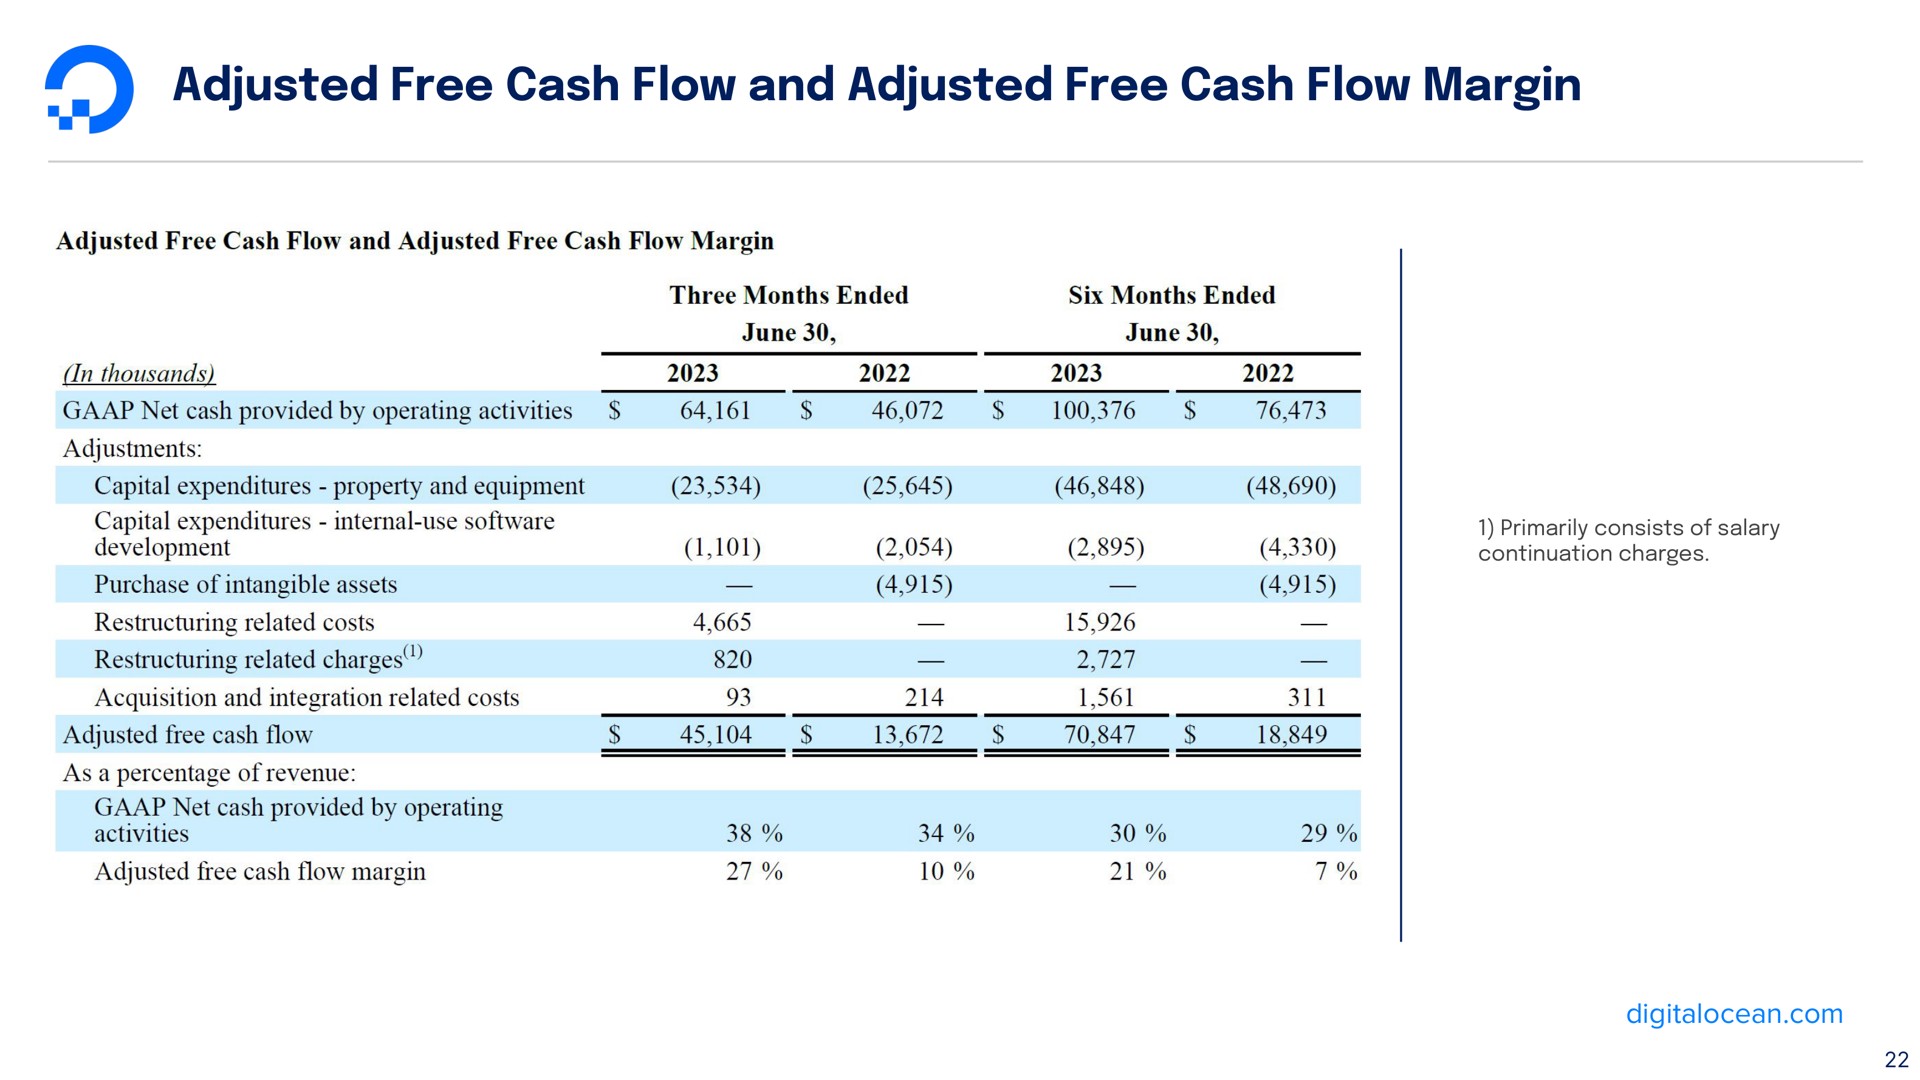 adjusted free cash flow and adjusted free cash flow margin | DigitalOcean